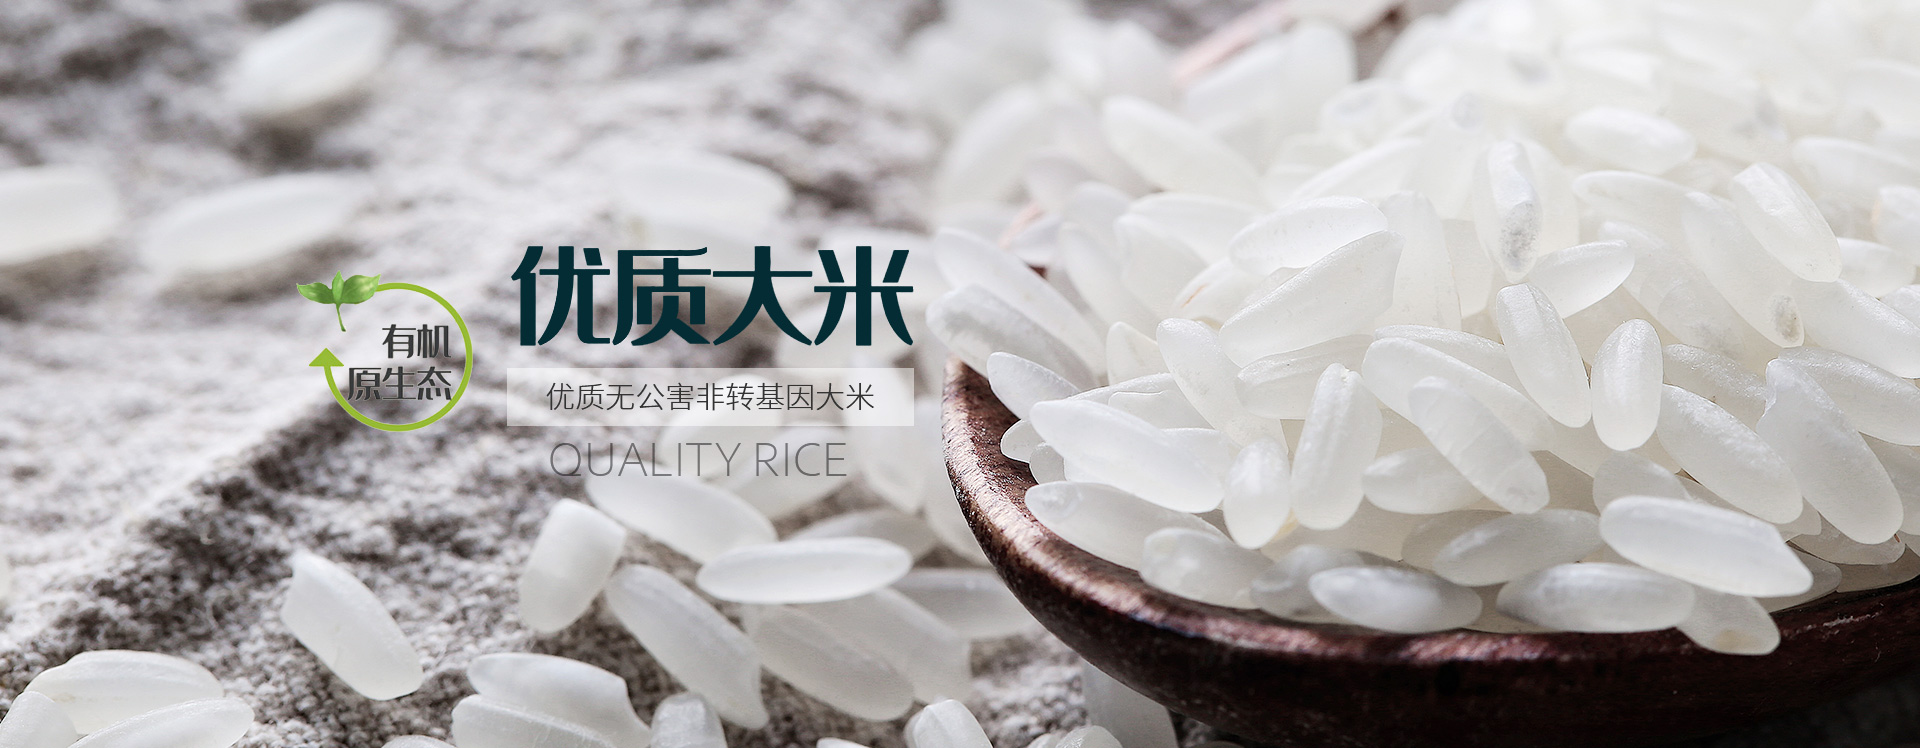 五常大米,瑞米軒,有機水稻(dao)種植(zhi)